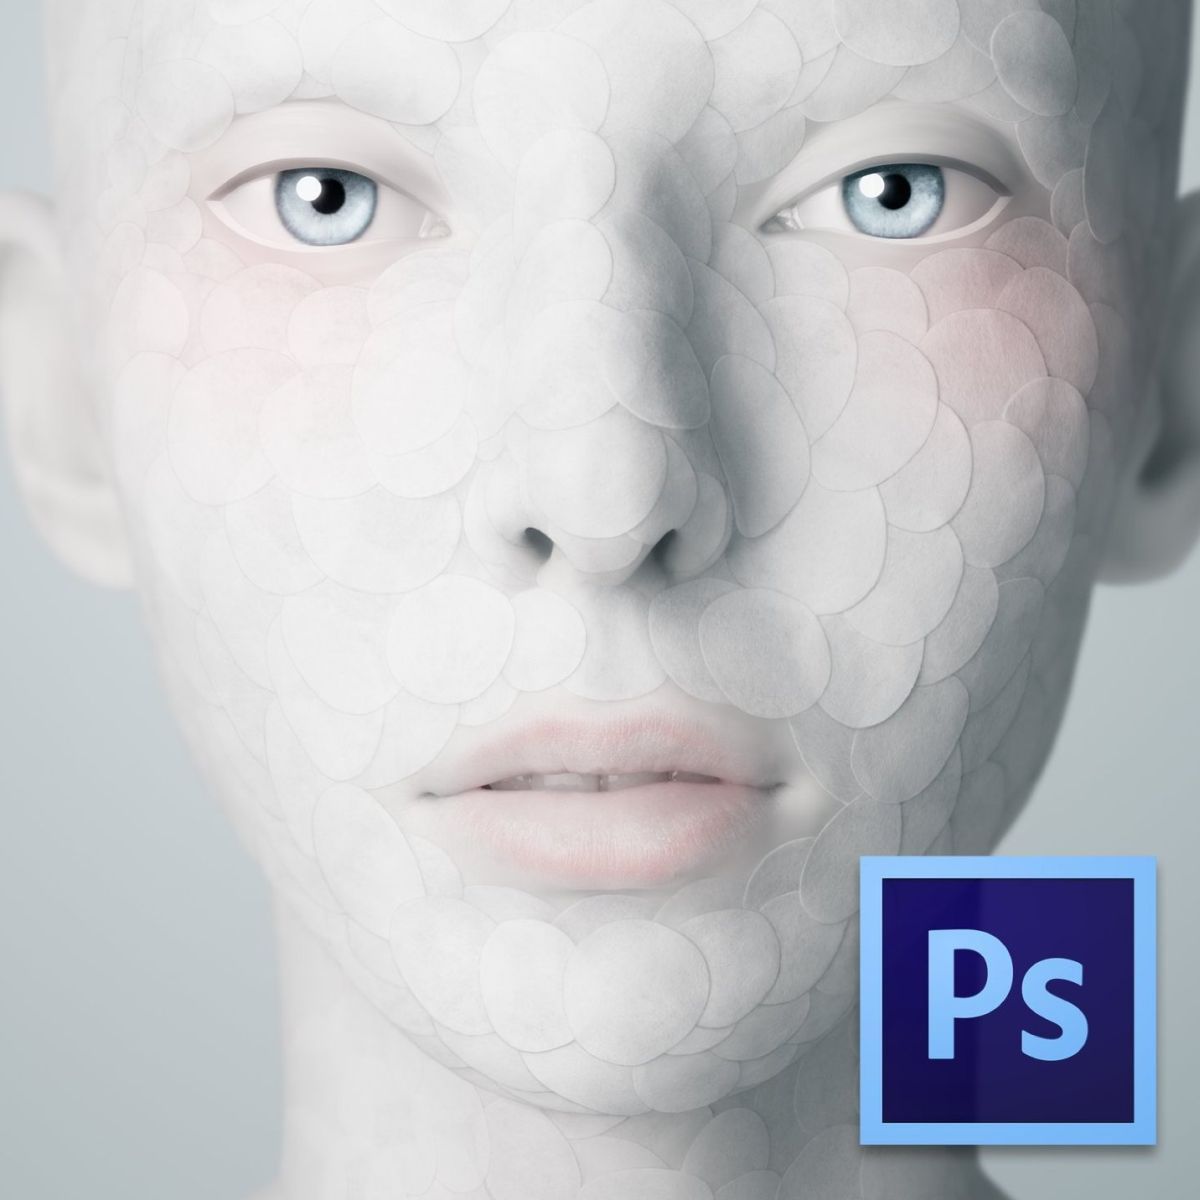 Adobe Camera Raw 9.1.1 to ostatnia aktualizacja dla Photoshopa CS6